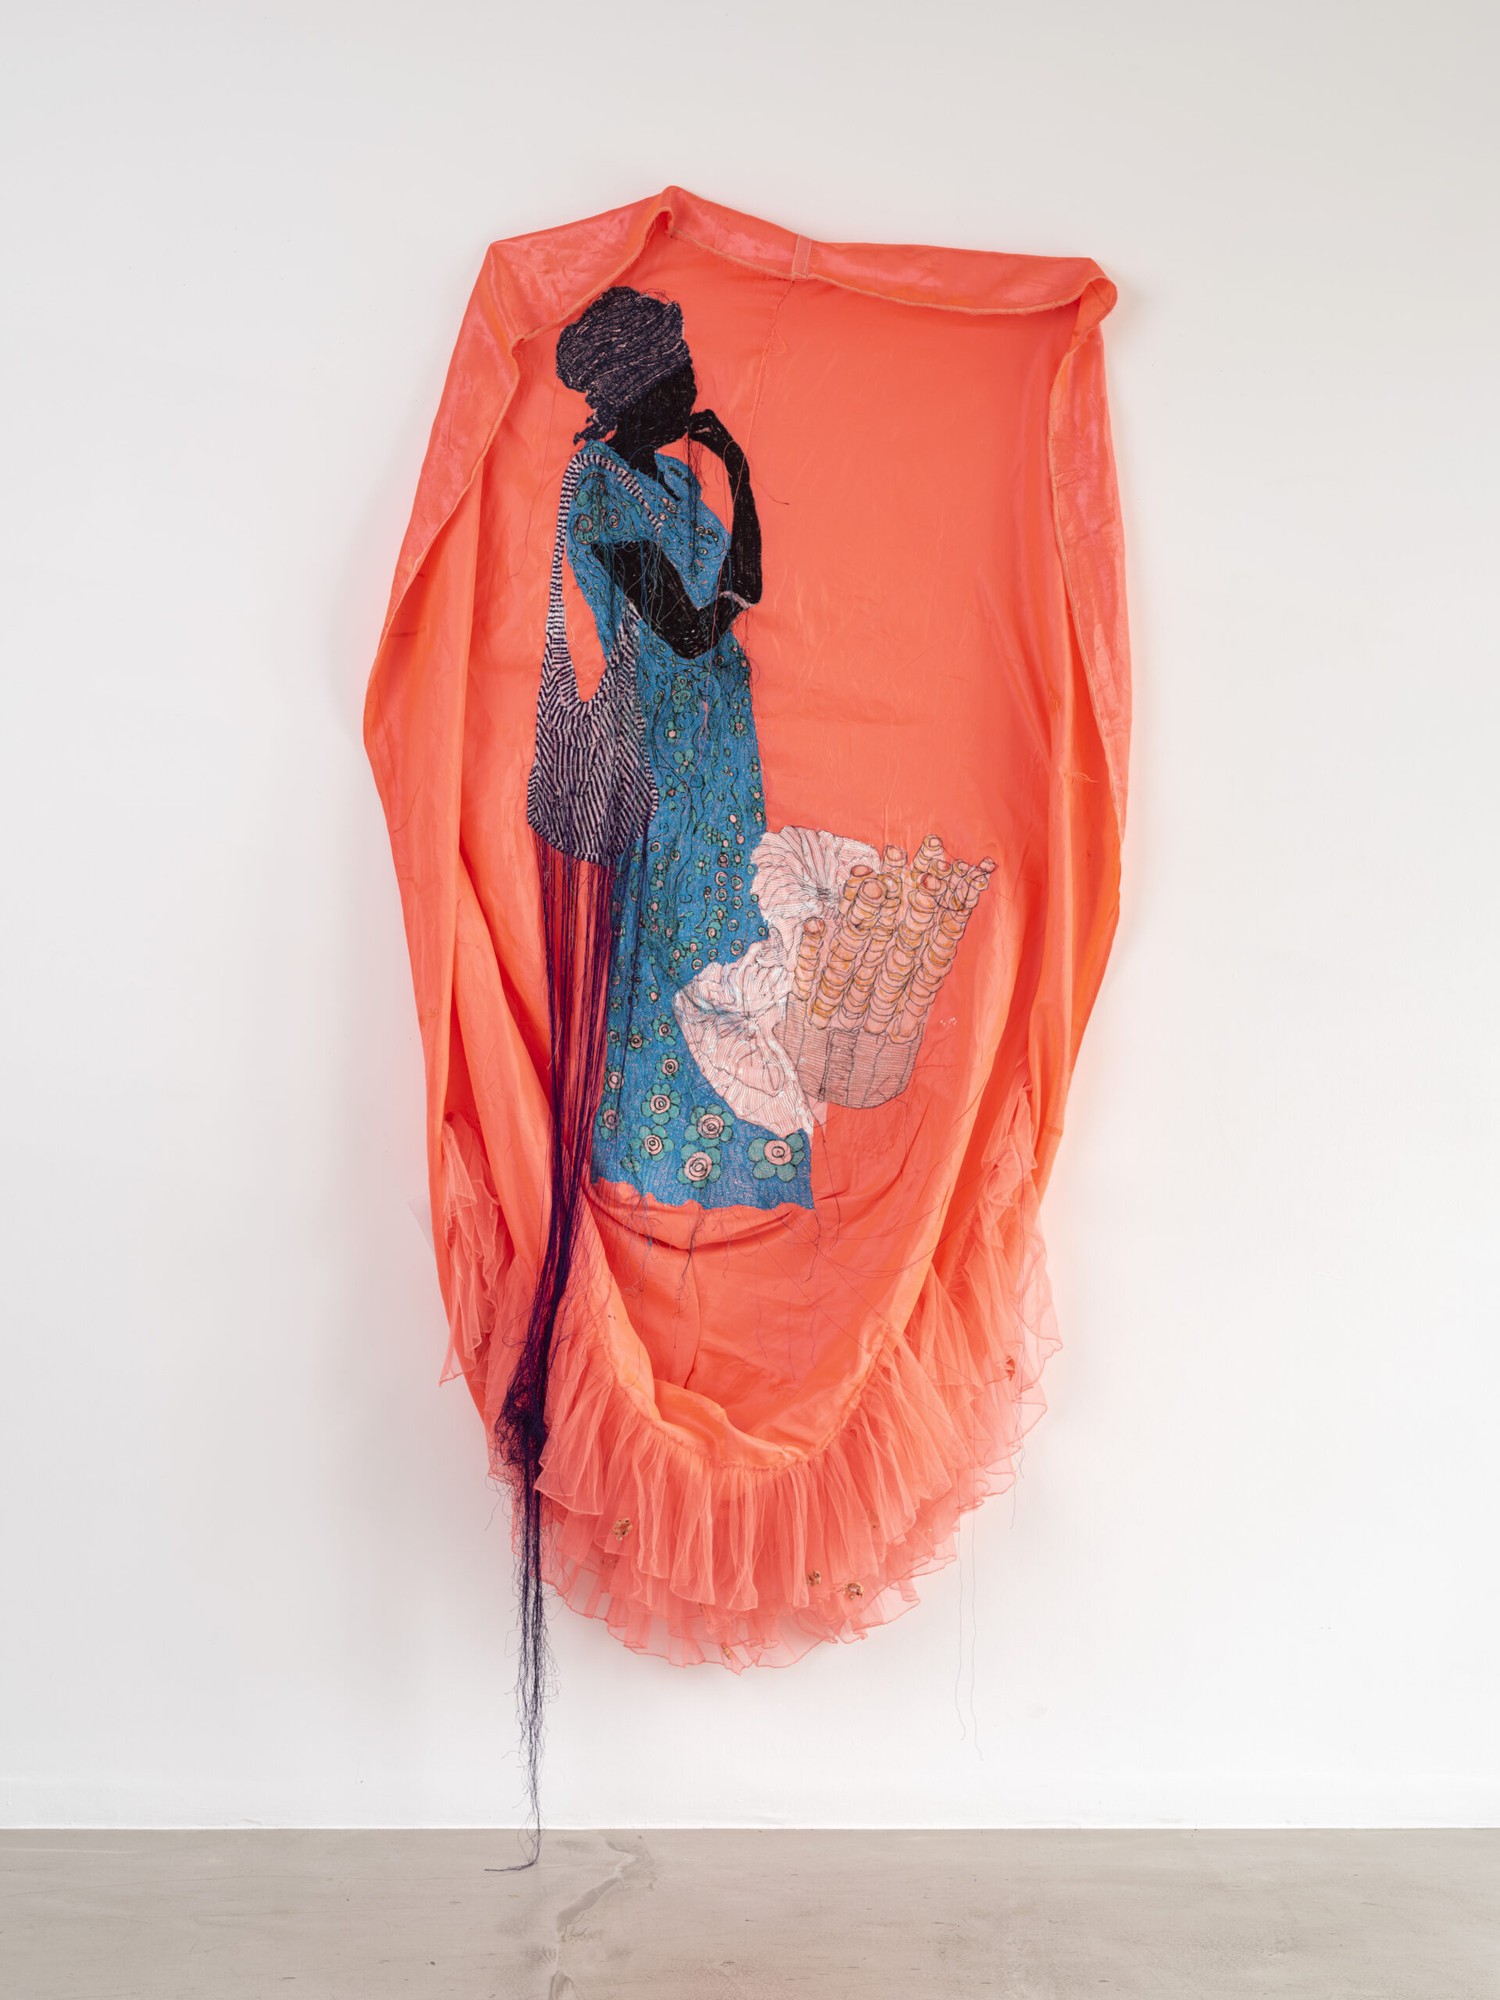 Ana Silva - Je n'ai pas besoin de fleurs 005, 2022 - Tissu satiné, tulle, broderie - 185 x 122 cm